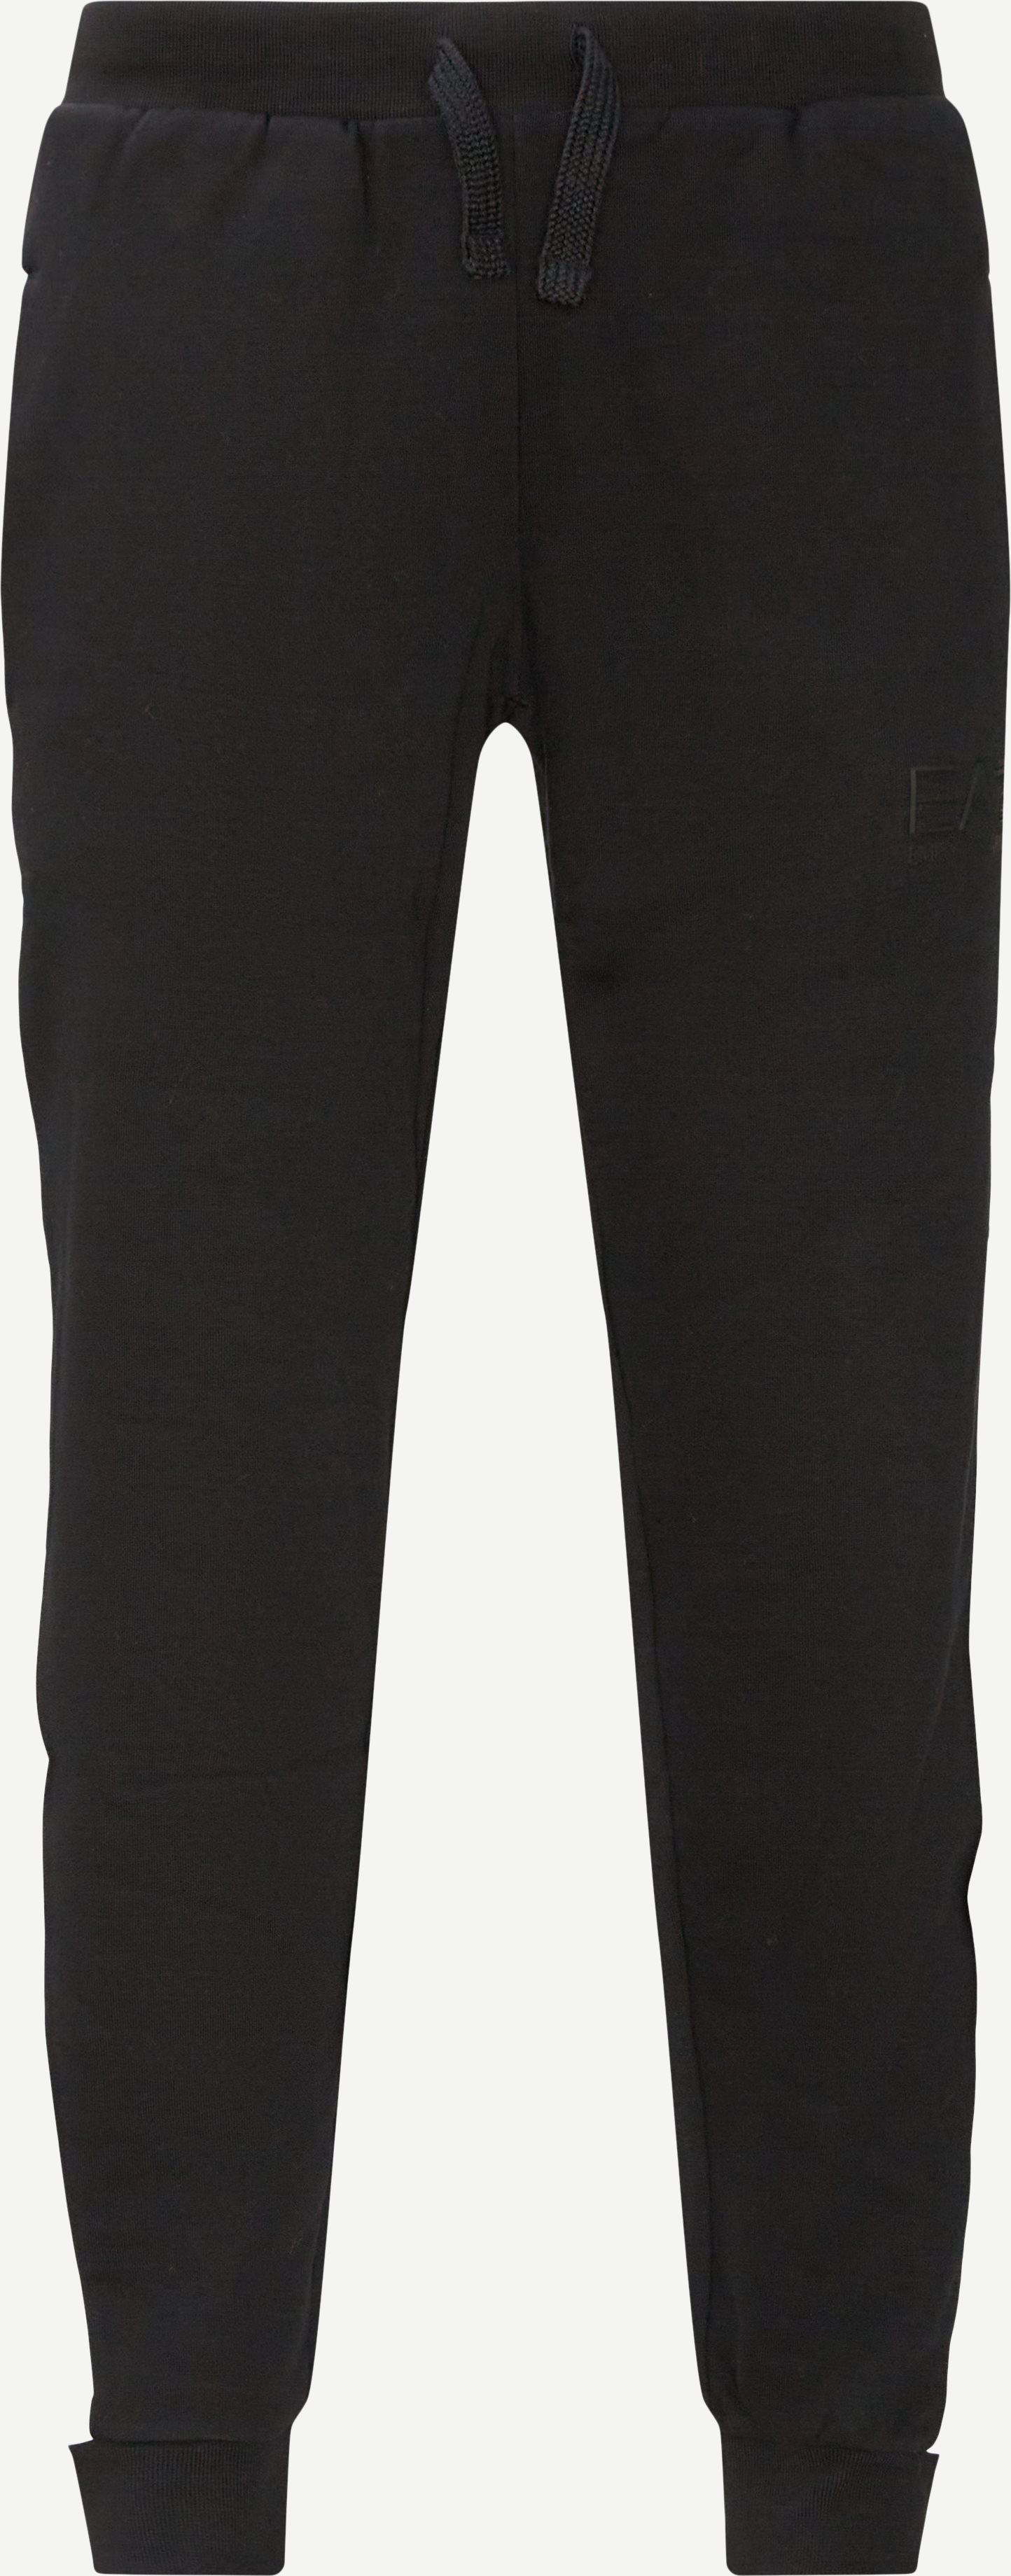 6HPV89 Sweatpants - Bukser - Regular fit - Sort